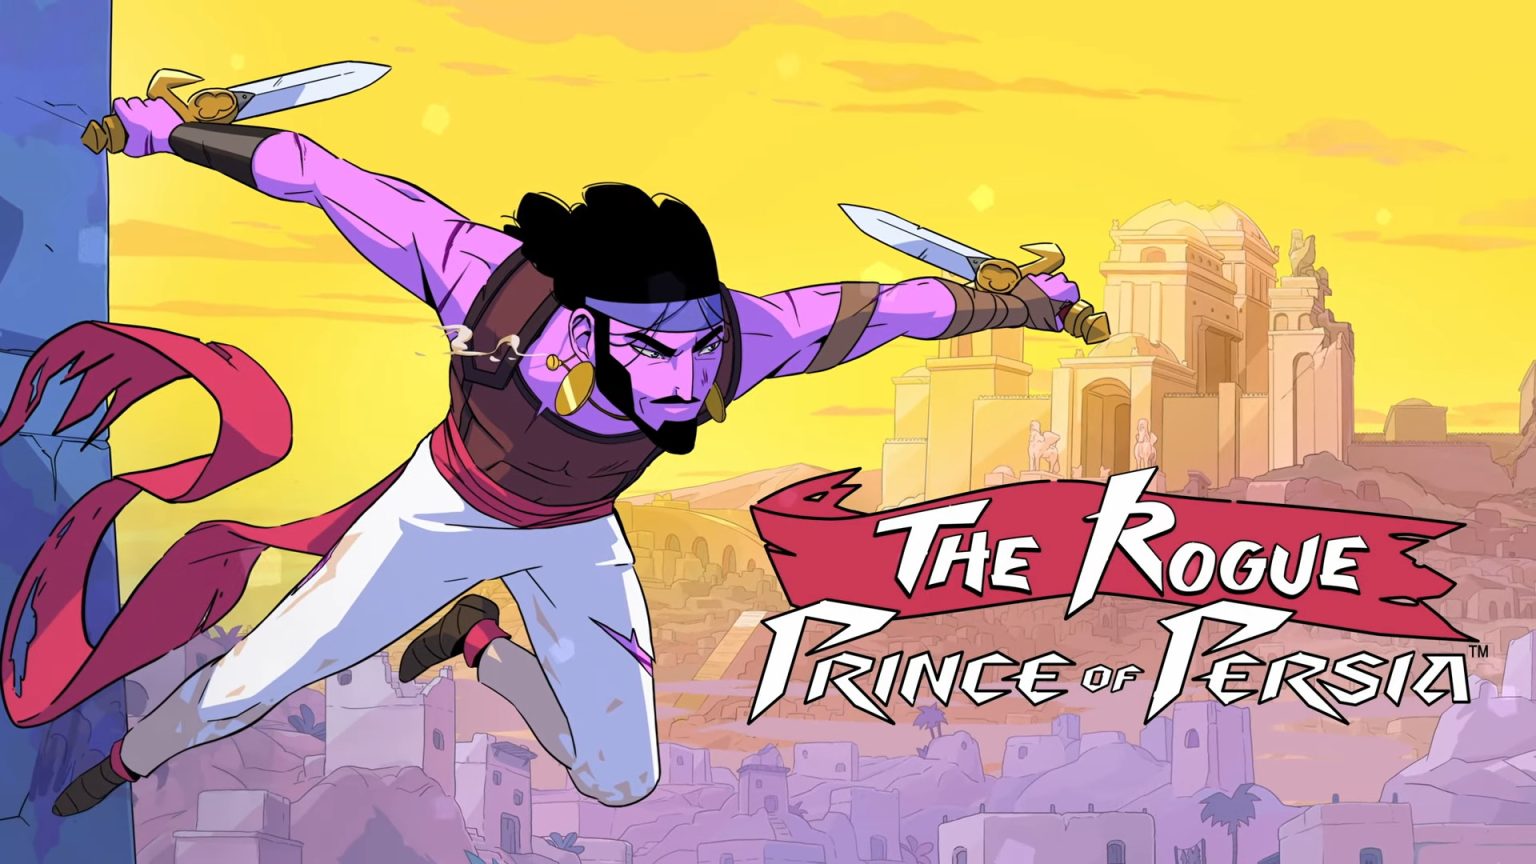 De ontwikkelaars van The Rogue Prince of Persia leggen tijdreizen en plot uit in nieuwe video